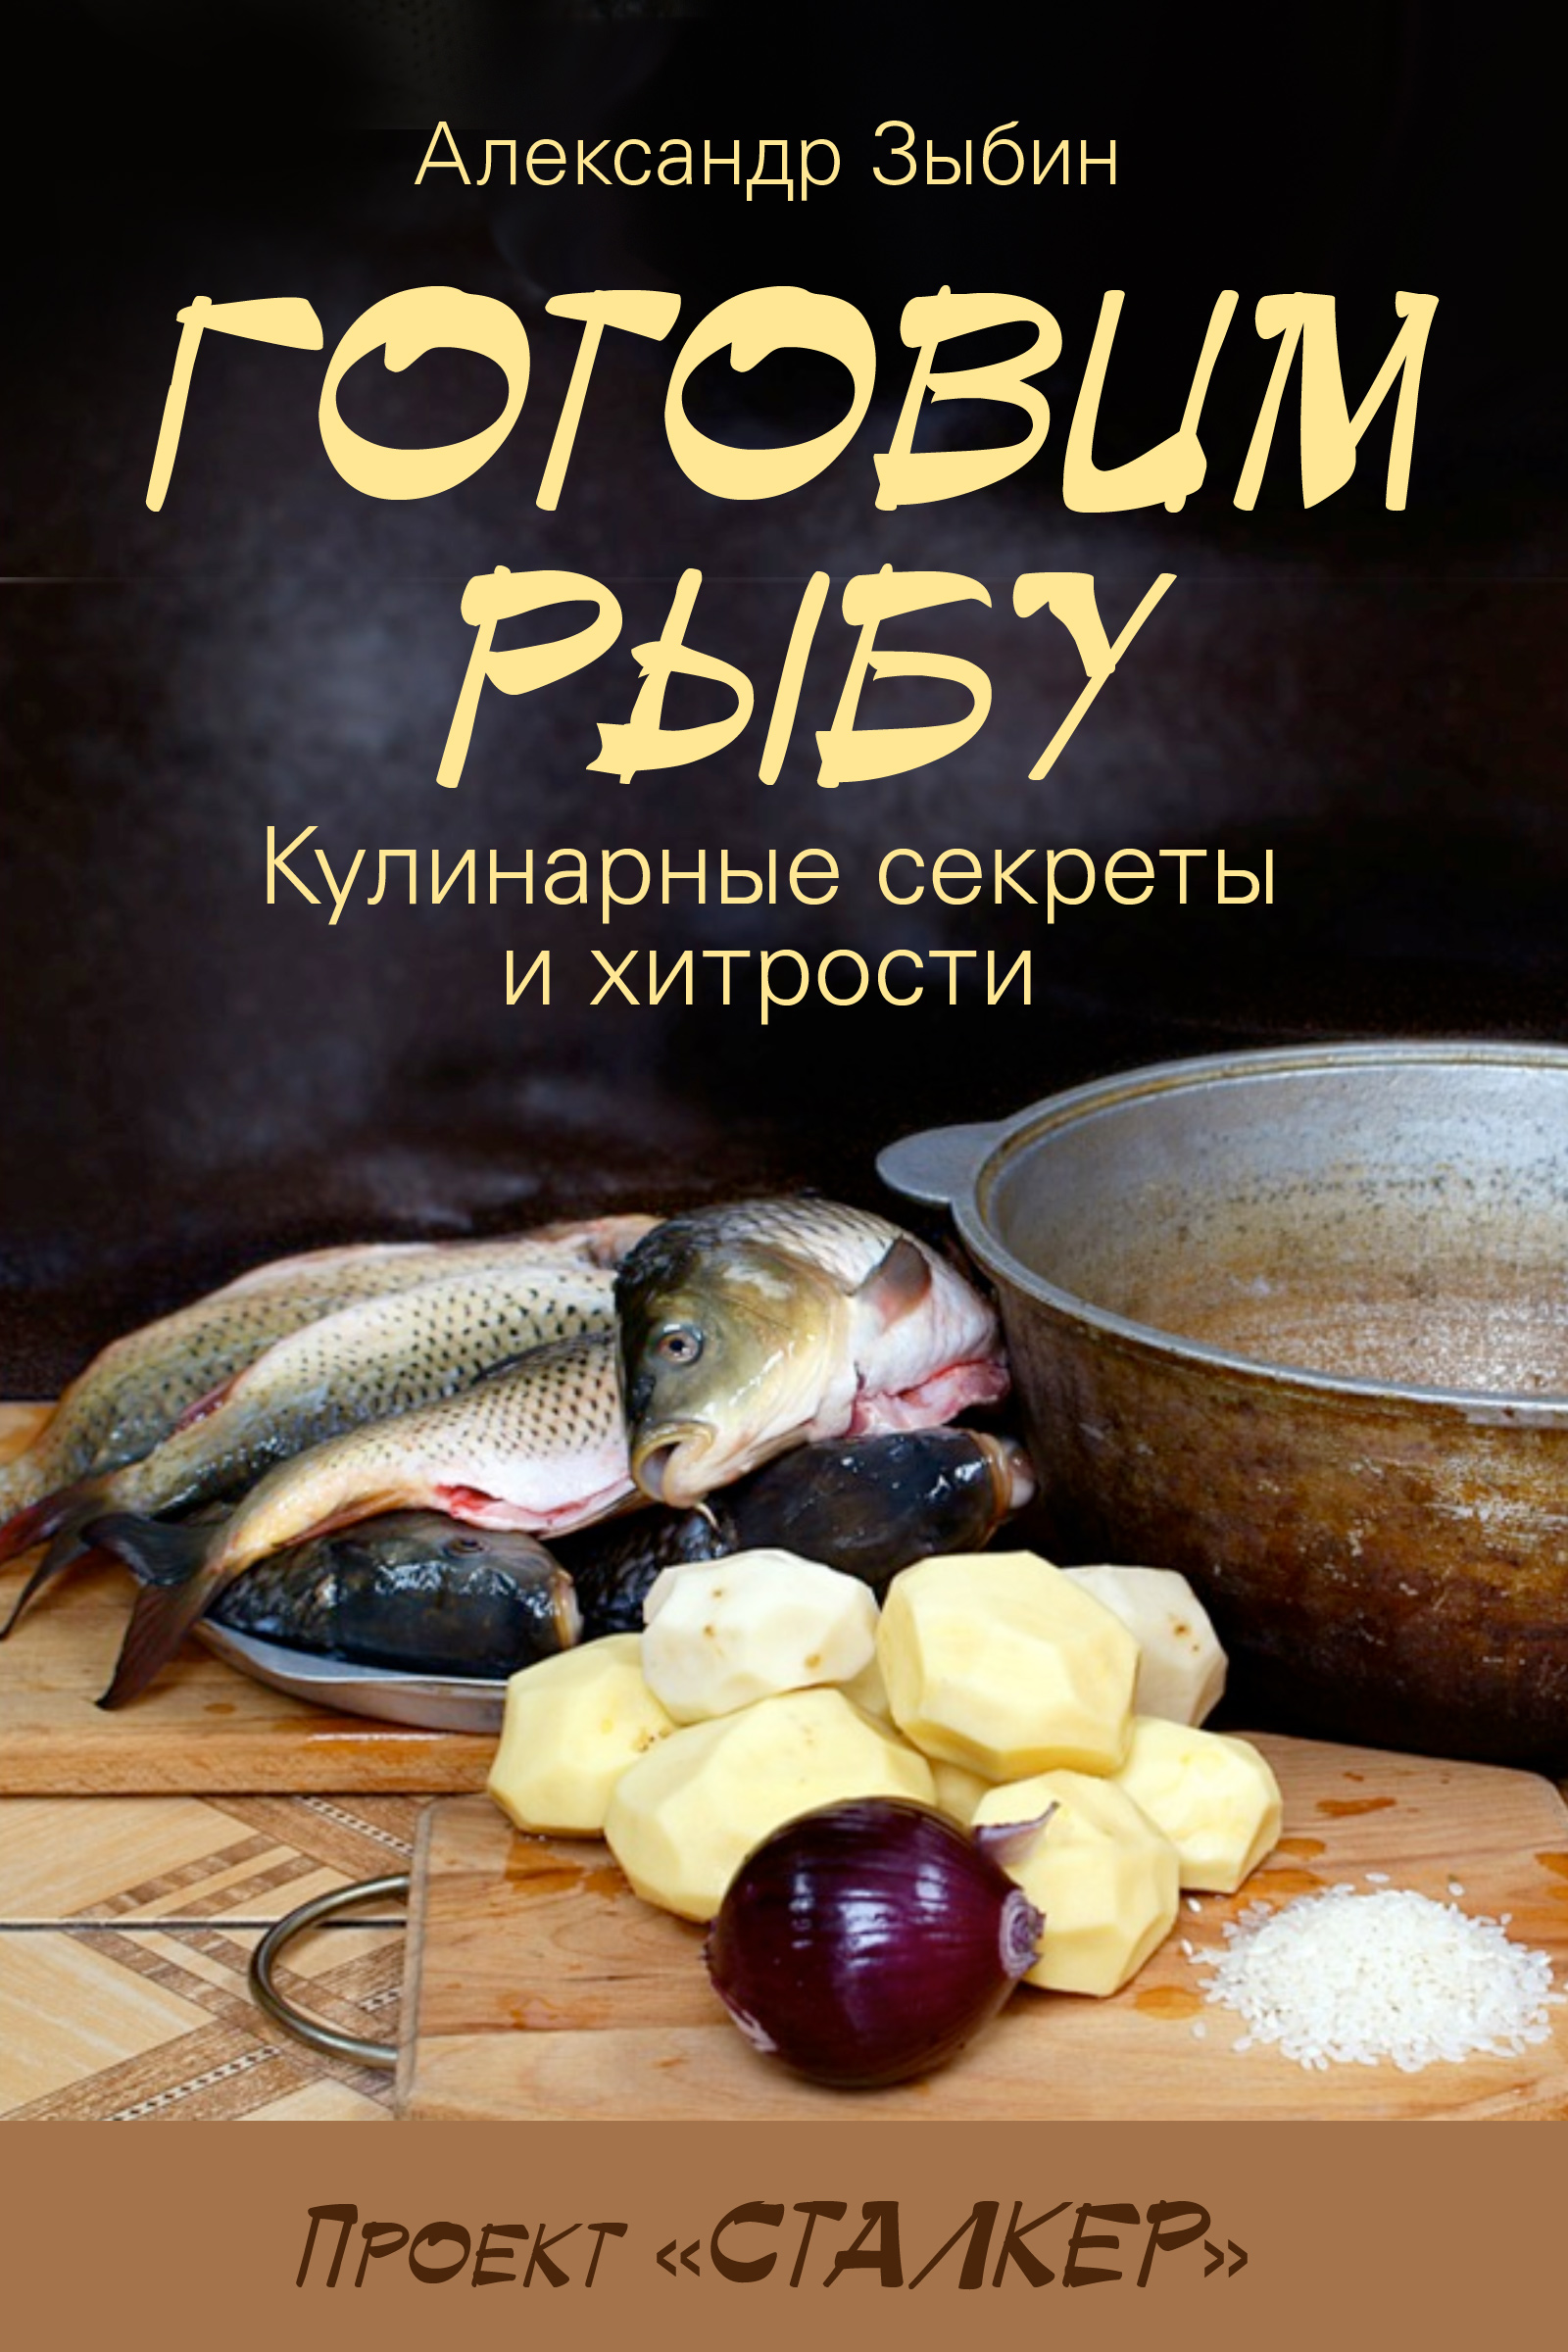 Книга Готовим рыбу из серии , созданная Александр Зыбин, может относится к жанру Кулинария. Стоимость электронной книги Готовим рыбу с идентификатором 9094621 составляет 60.00 руб.